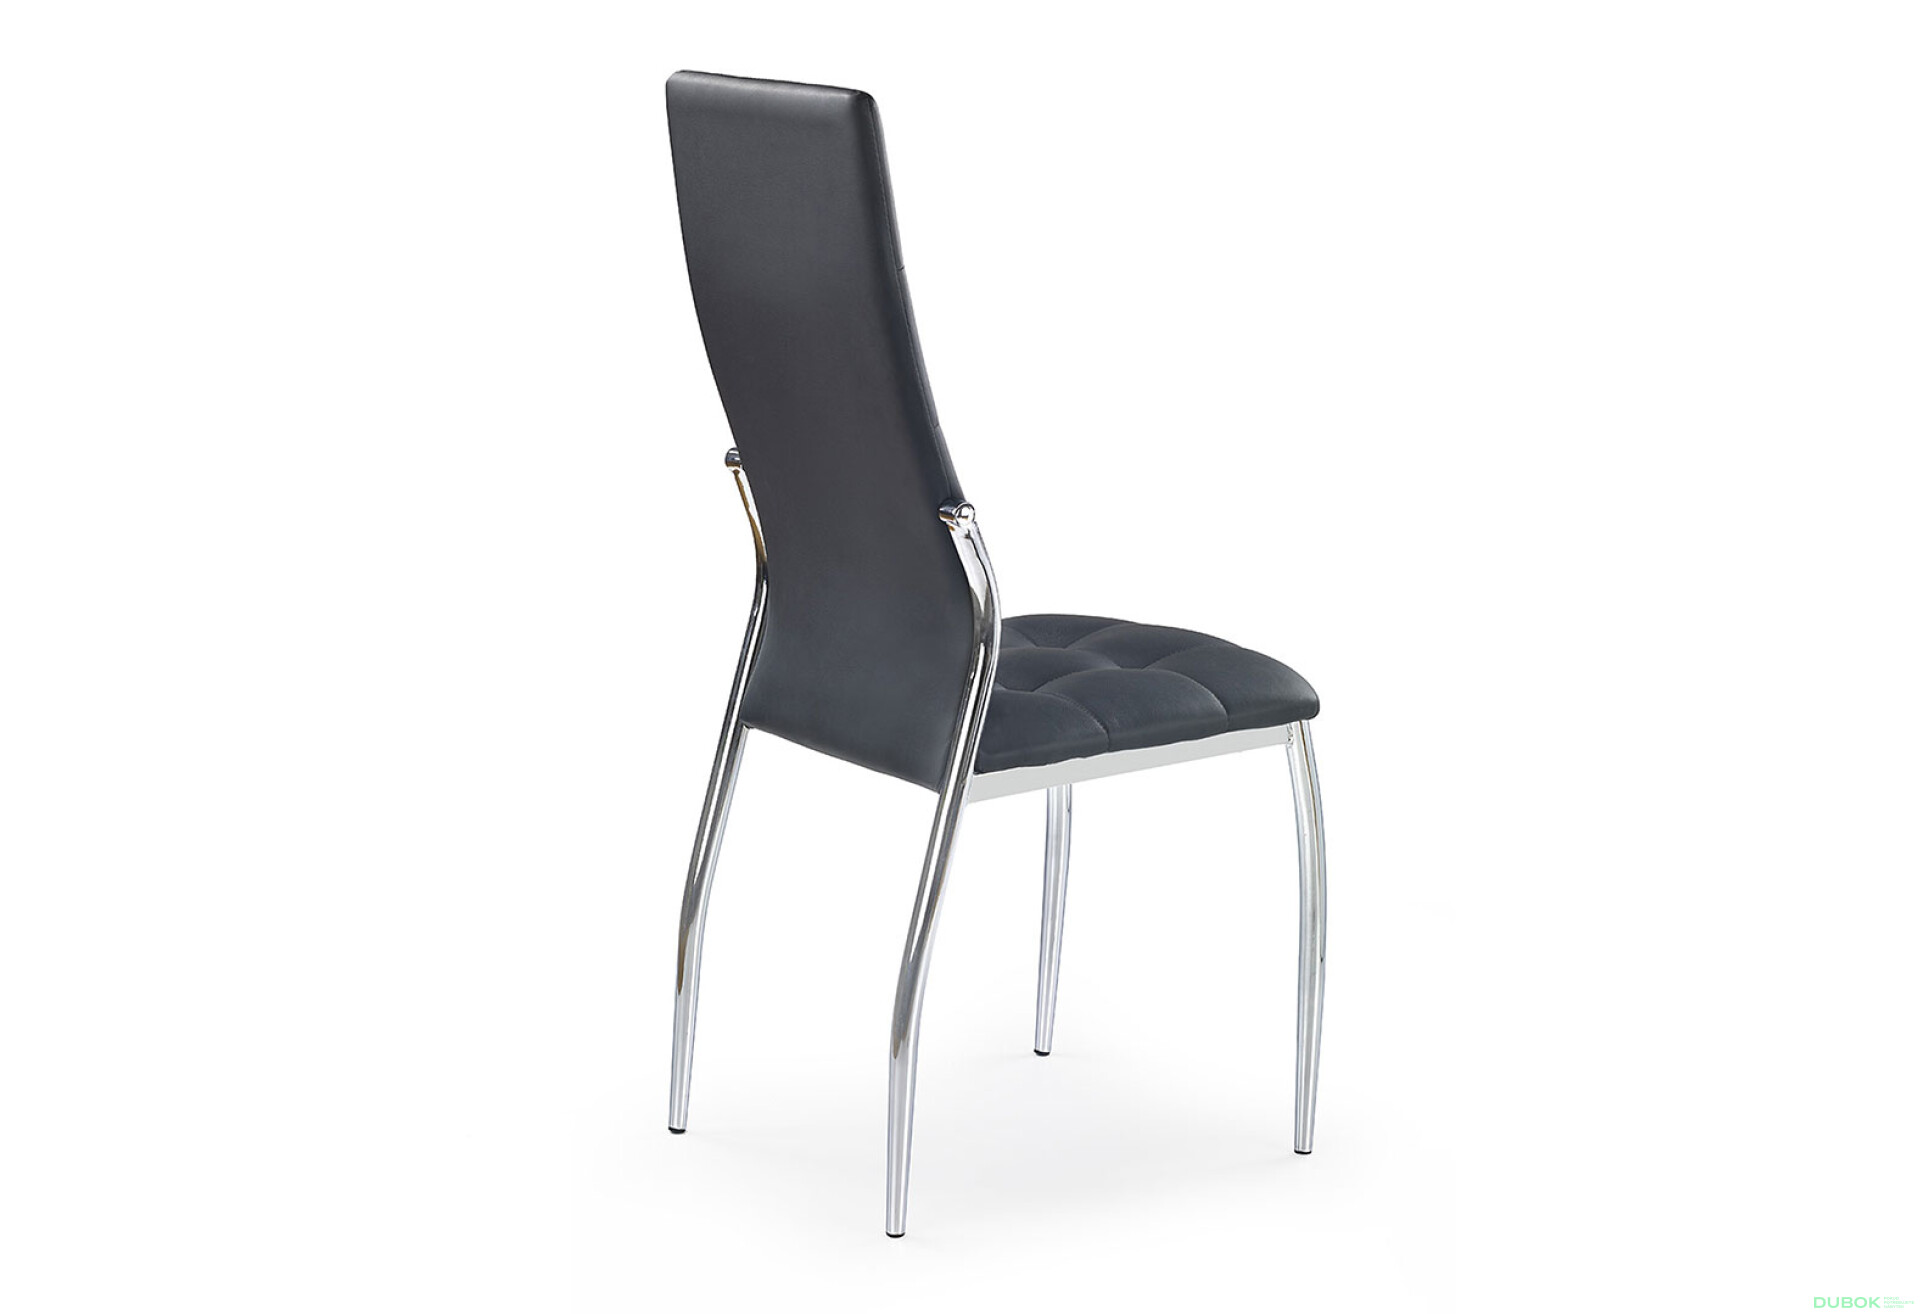 Фото 2 - Židle K209 chrom / černá ekokůže